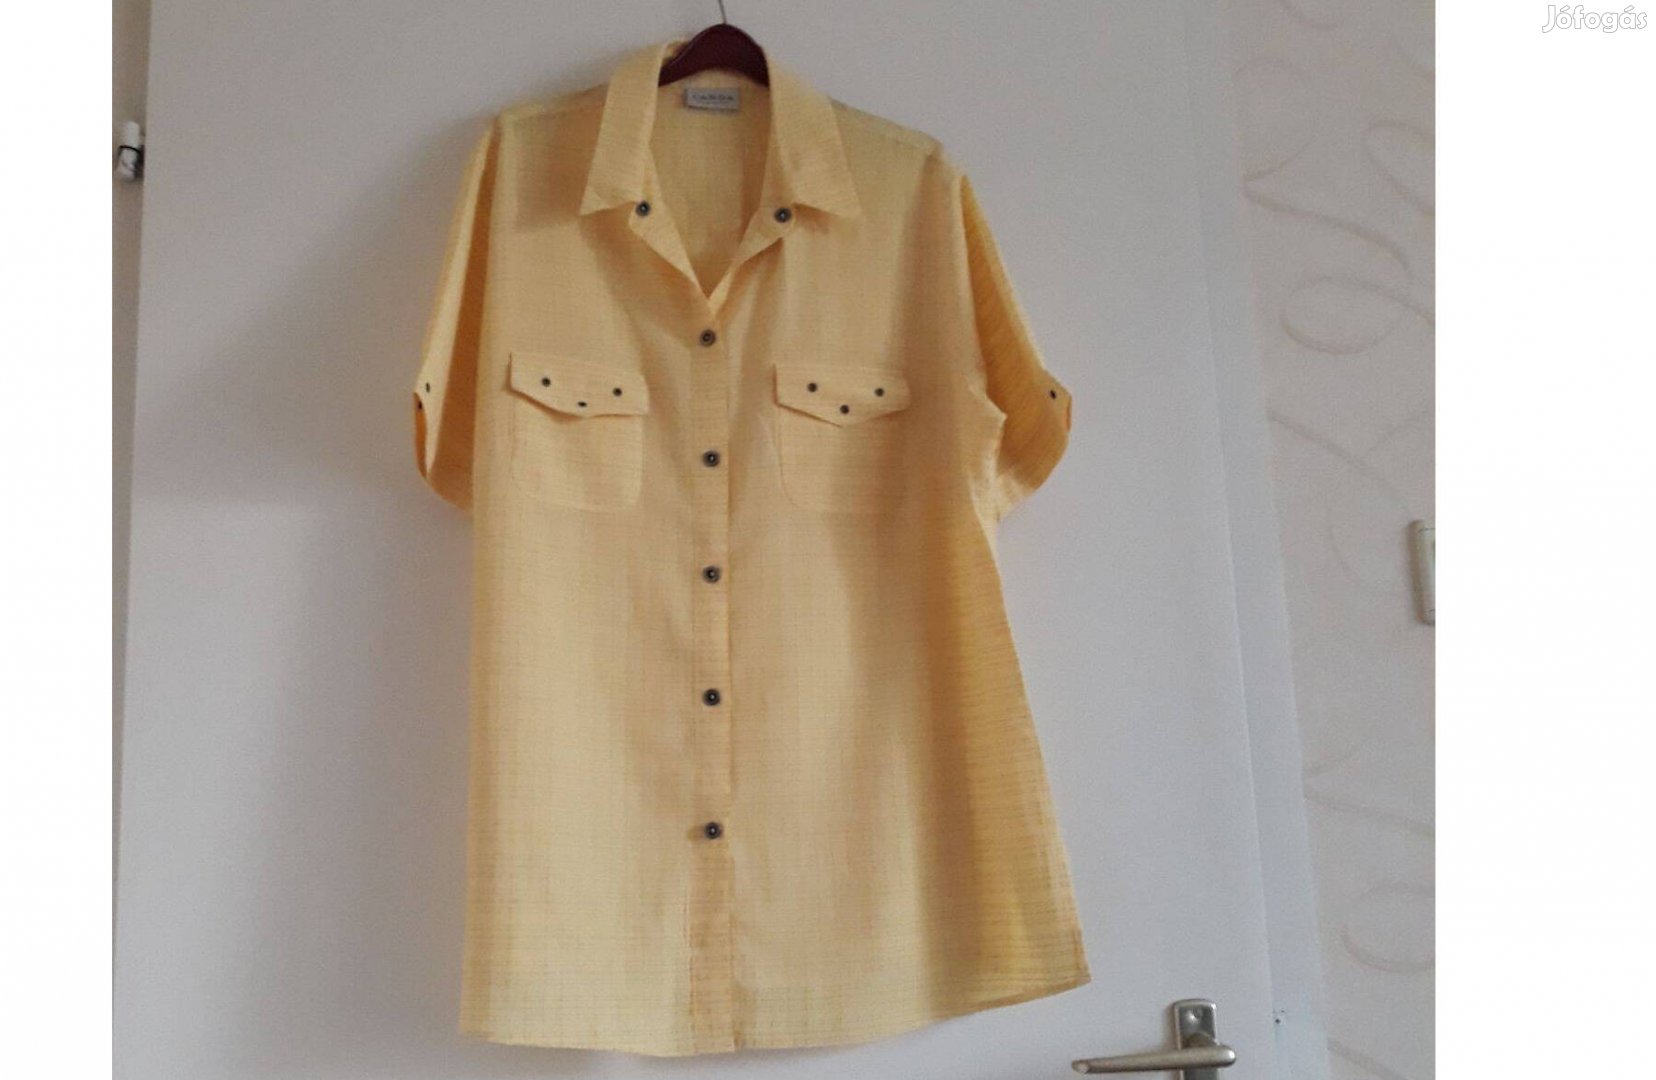 Sárga színű női ing-blúz, 44-es méretben